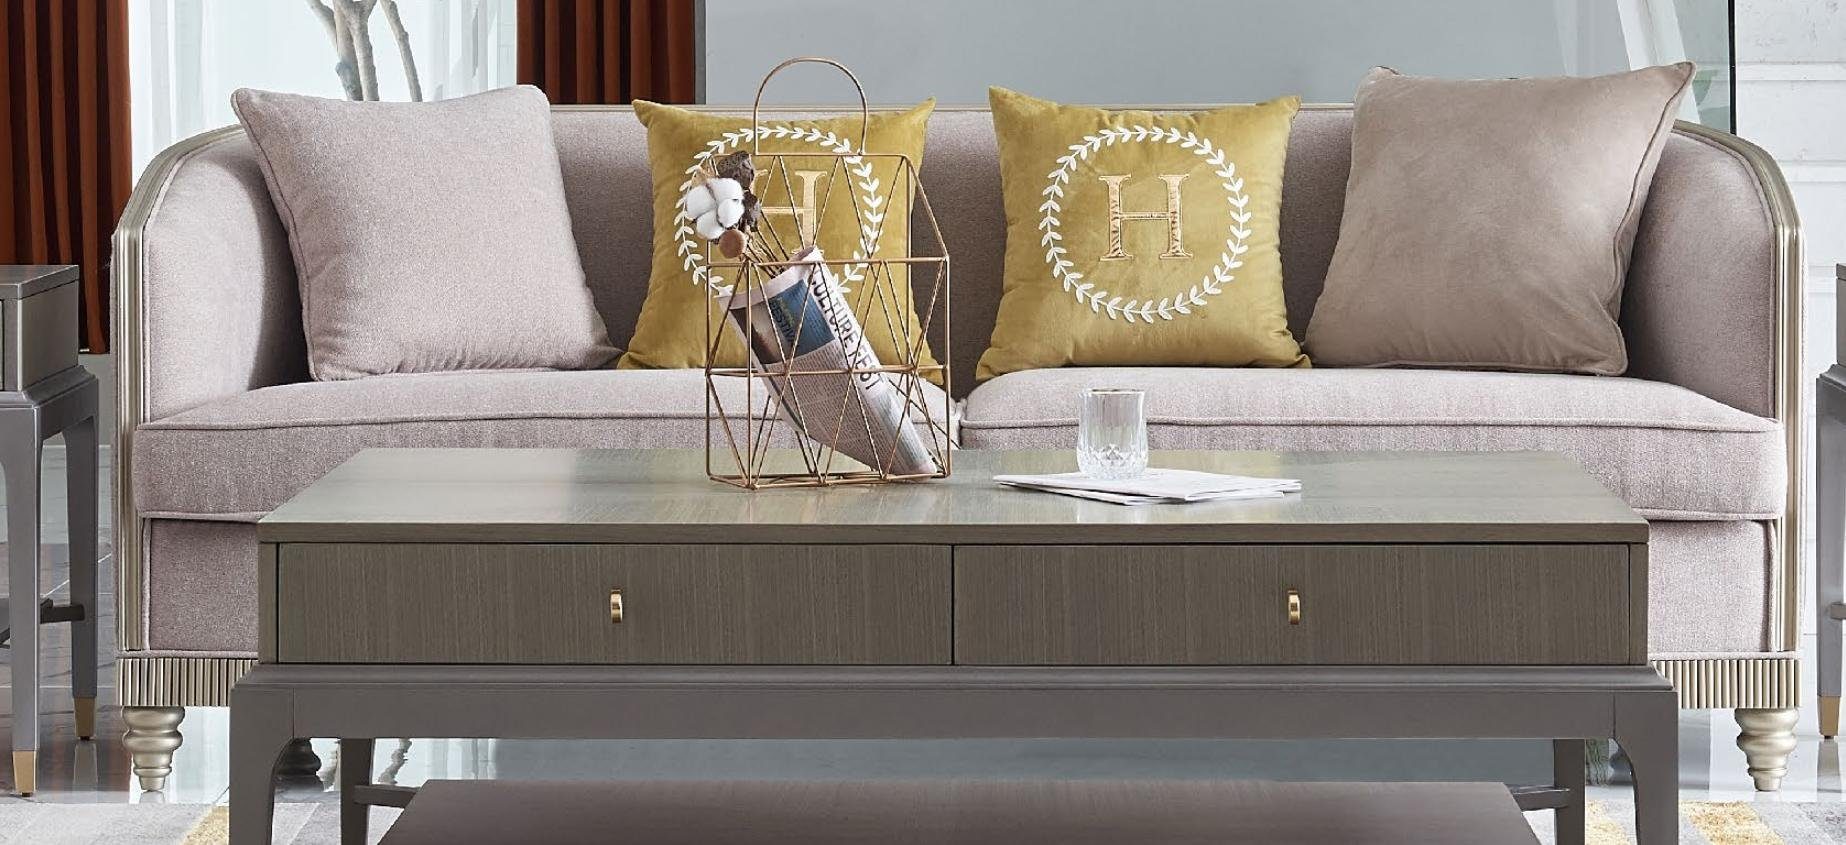 Textil Sofa Neu, moderne Polstermöbel Dreisitzer Europe JVmoebel 3-er beige Couch Made in